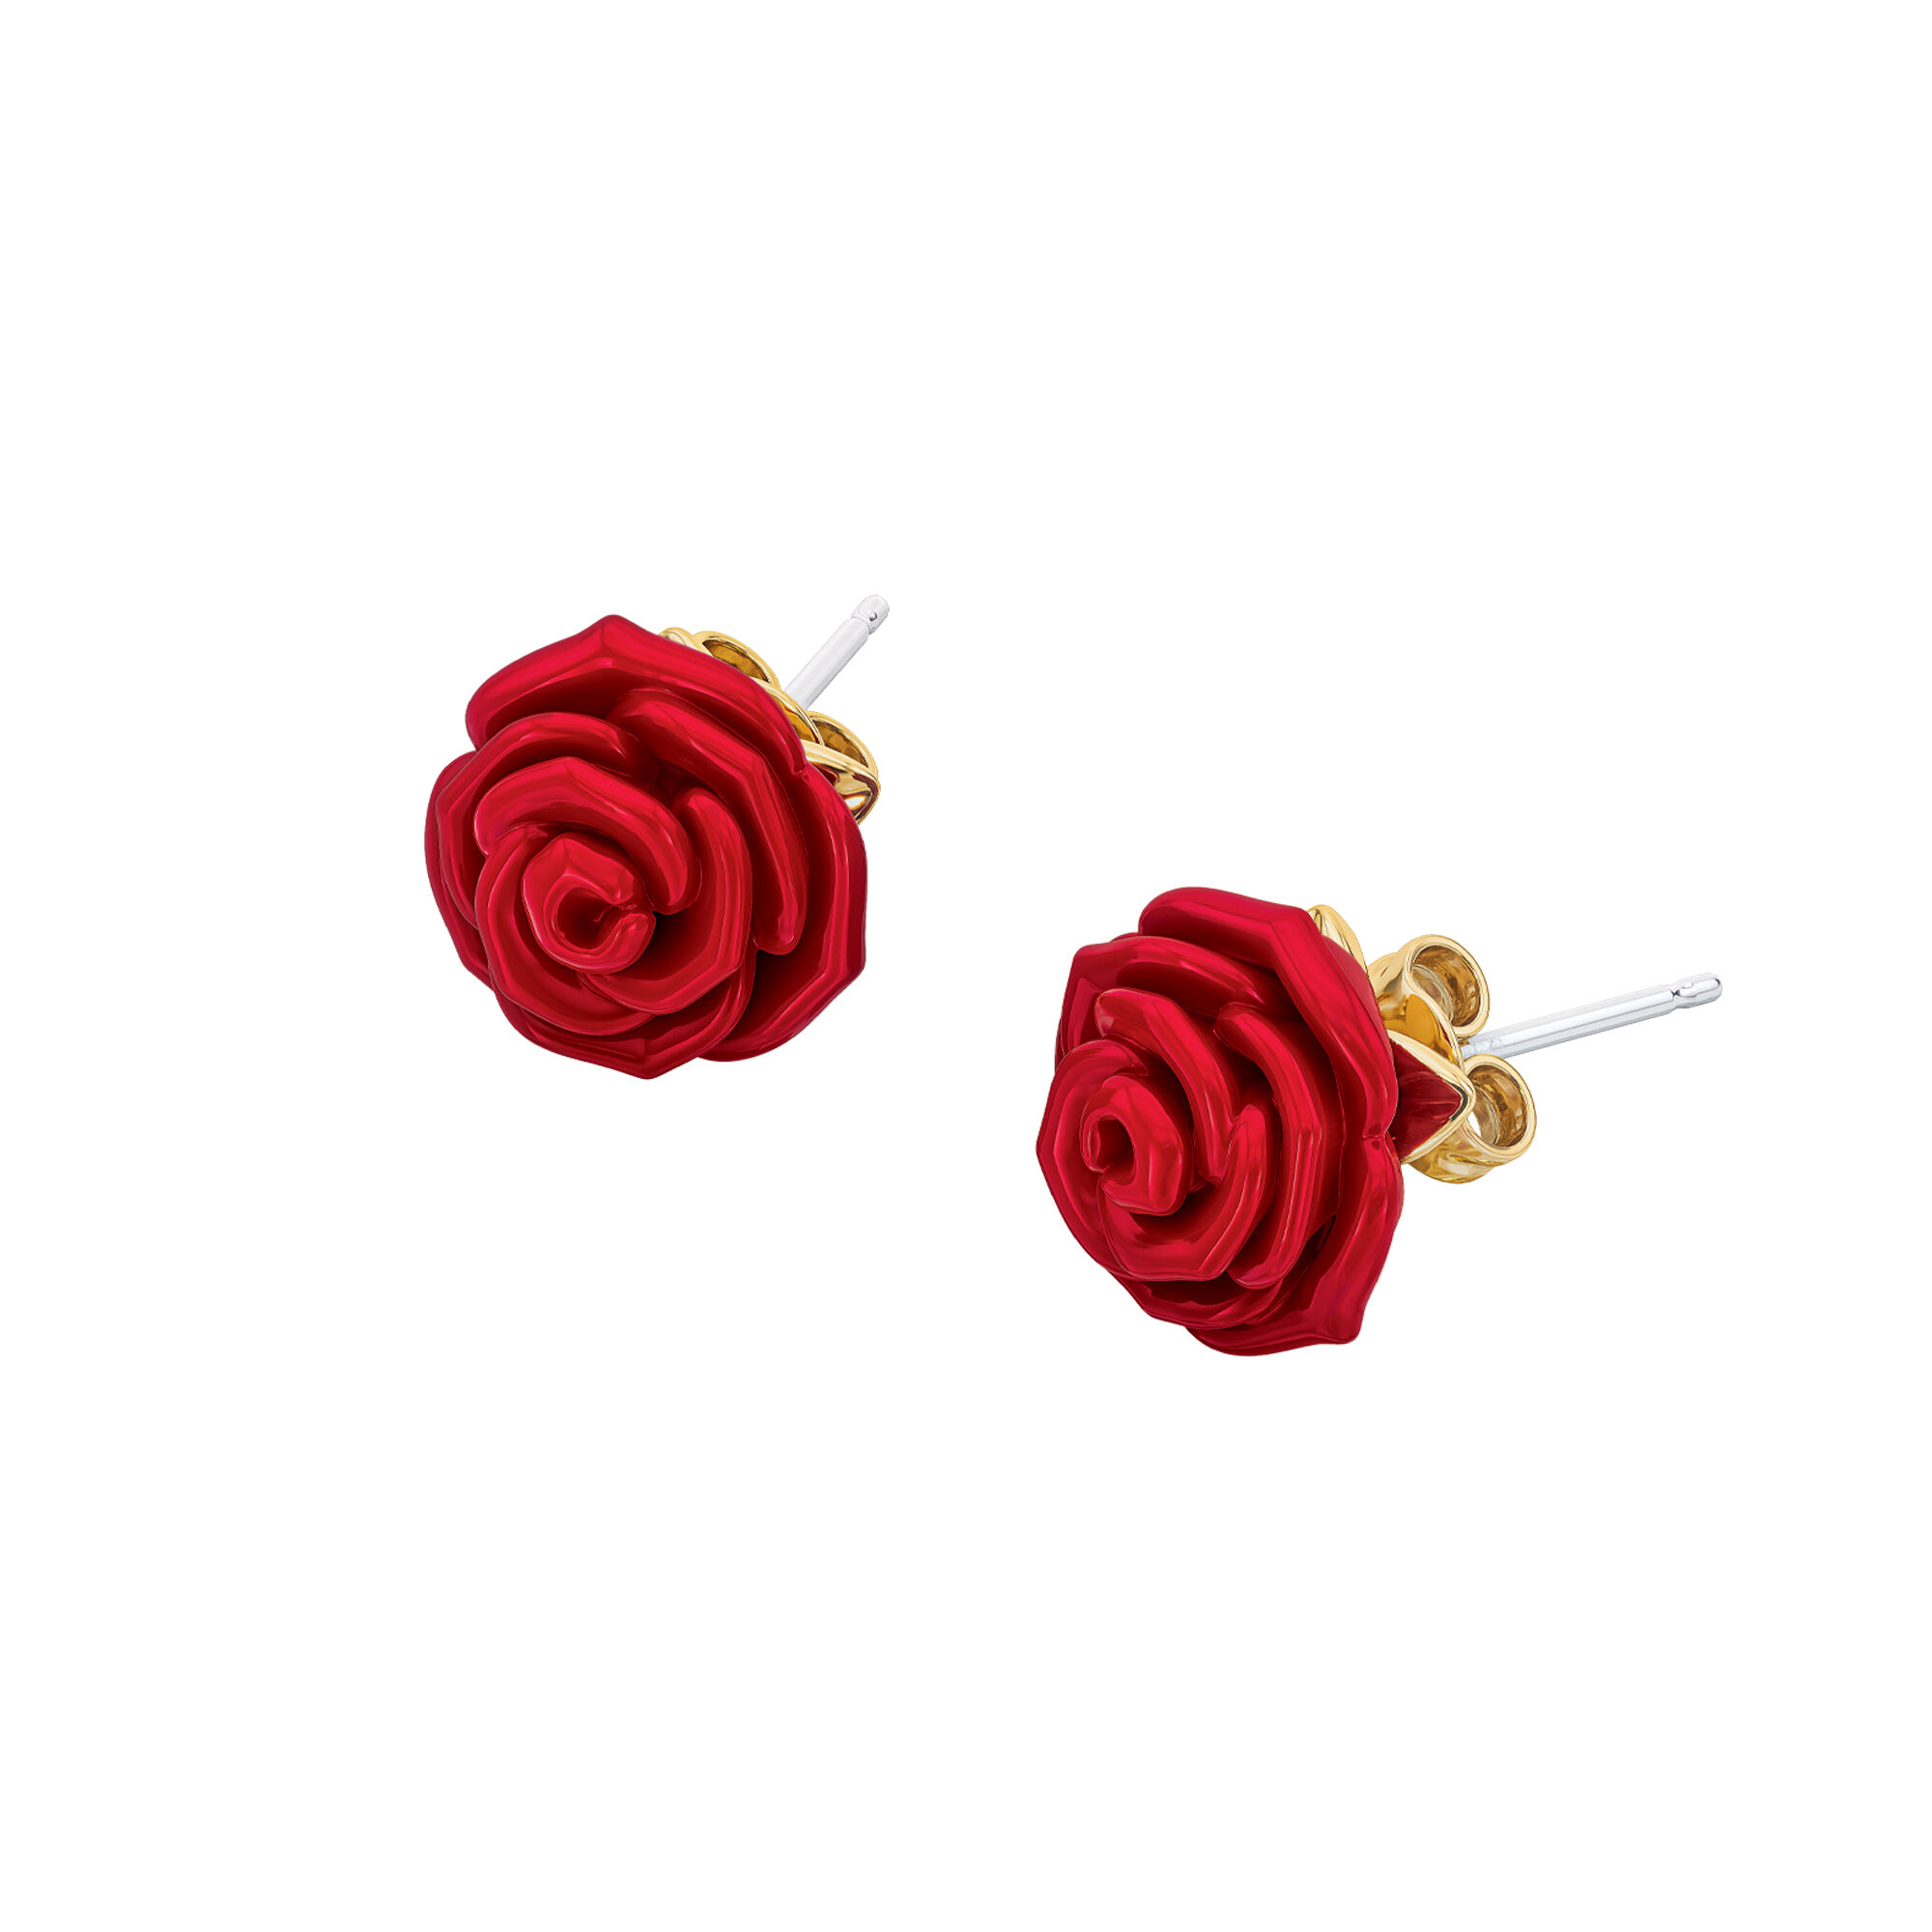 Everlasting Rose Earrings 11339 0025 a main